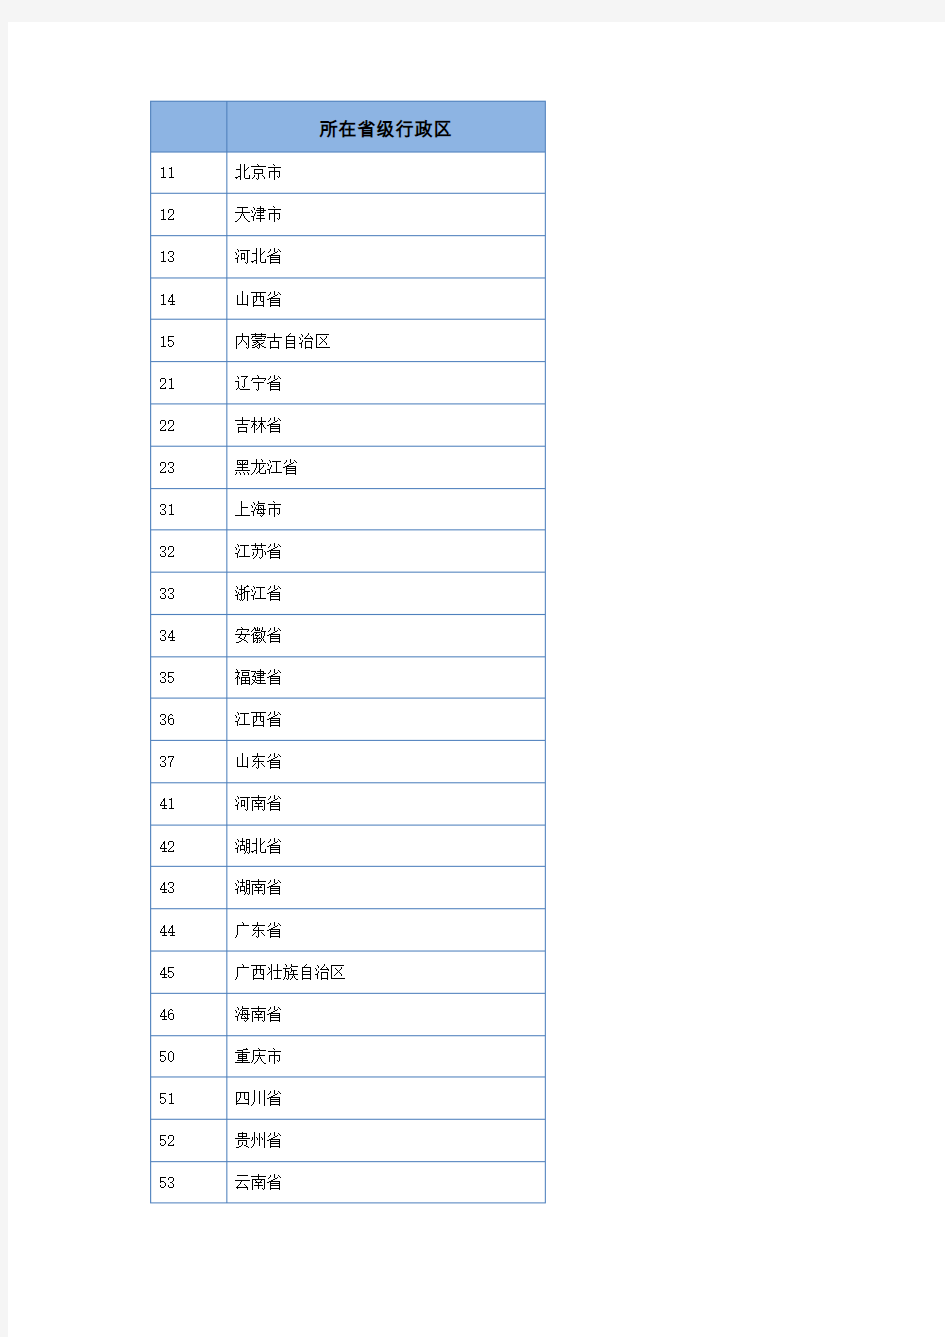 中国各省市身份证区域代码